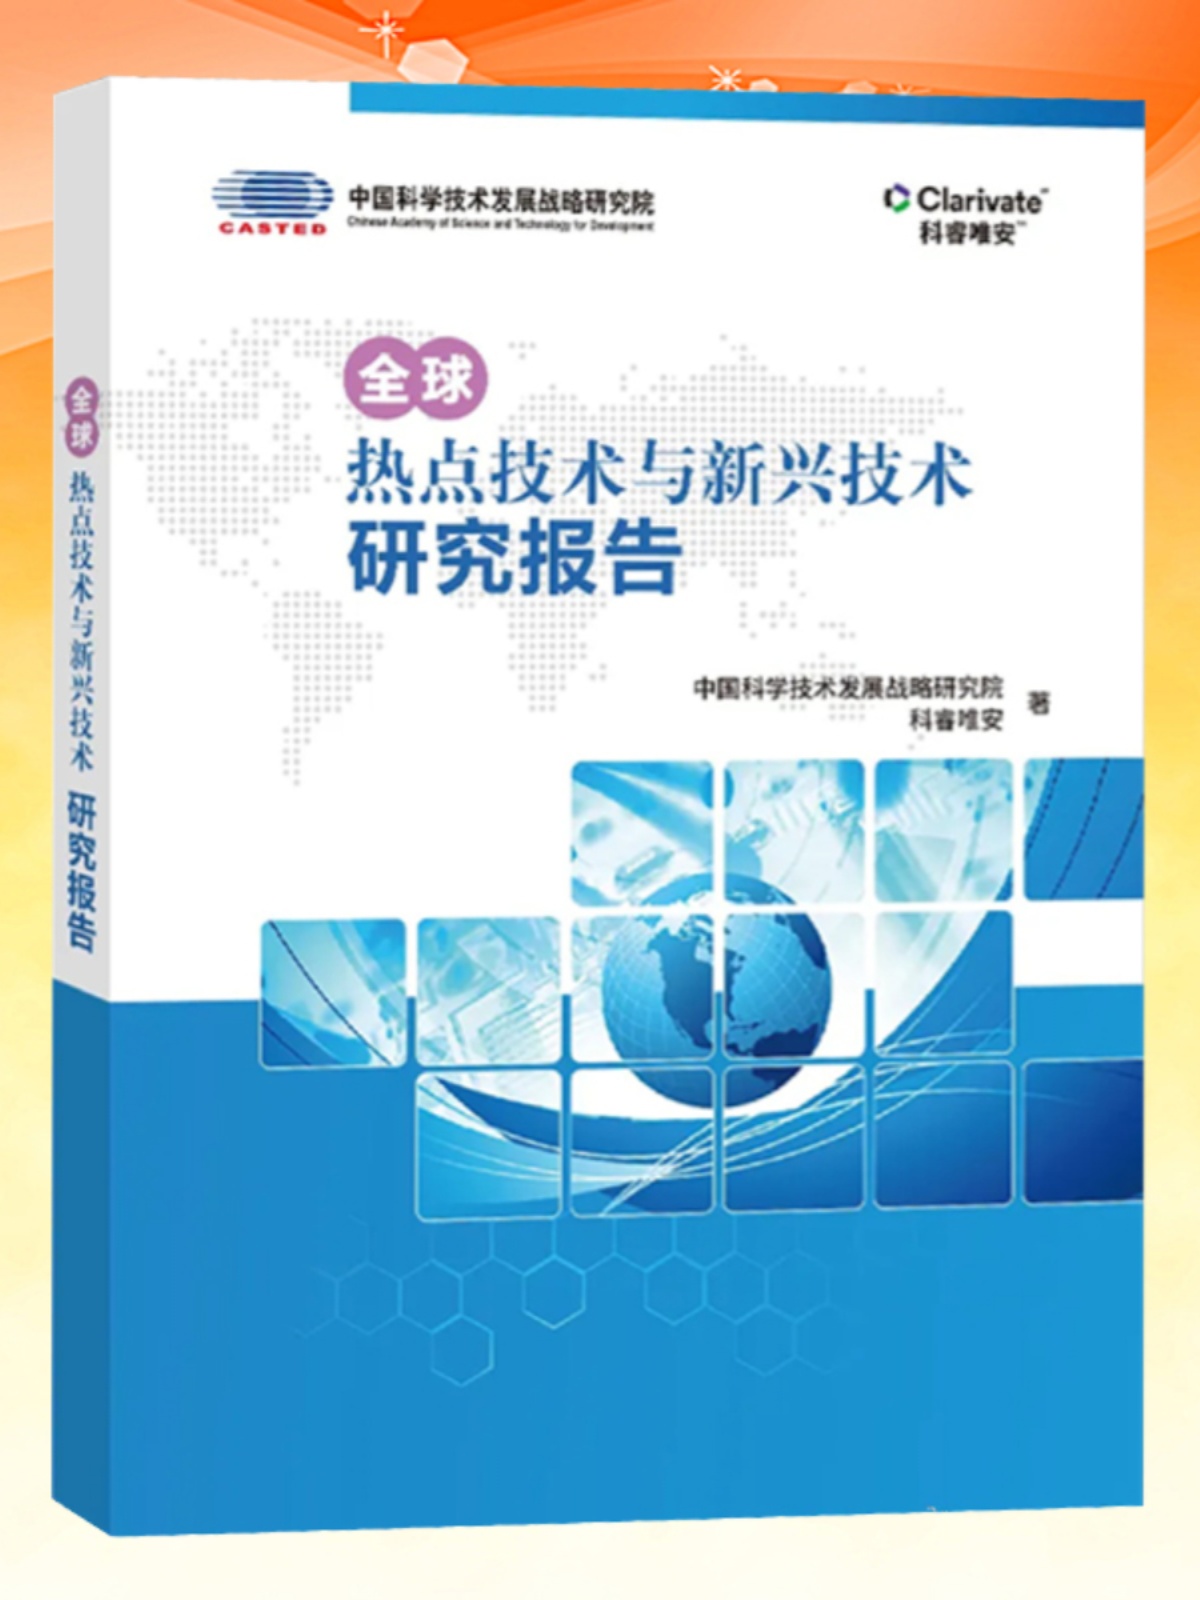 全新正版 全球热点技术与新兴技术研究报告 中国科学技术发展战略研究院 科睿唯安 报告书籍